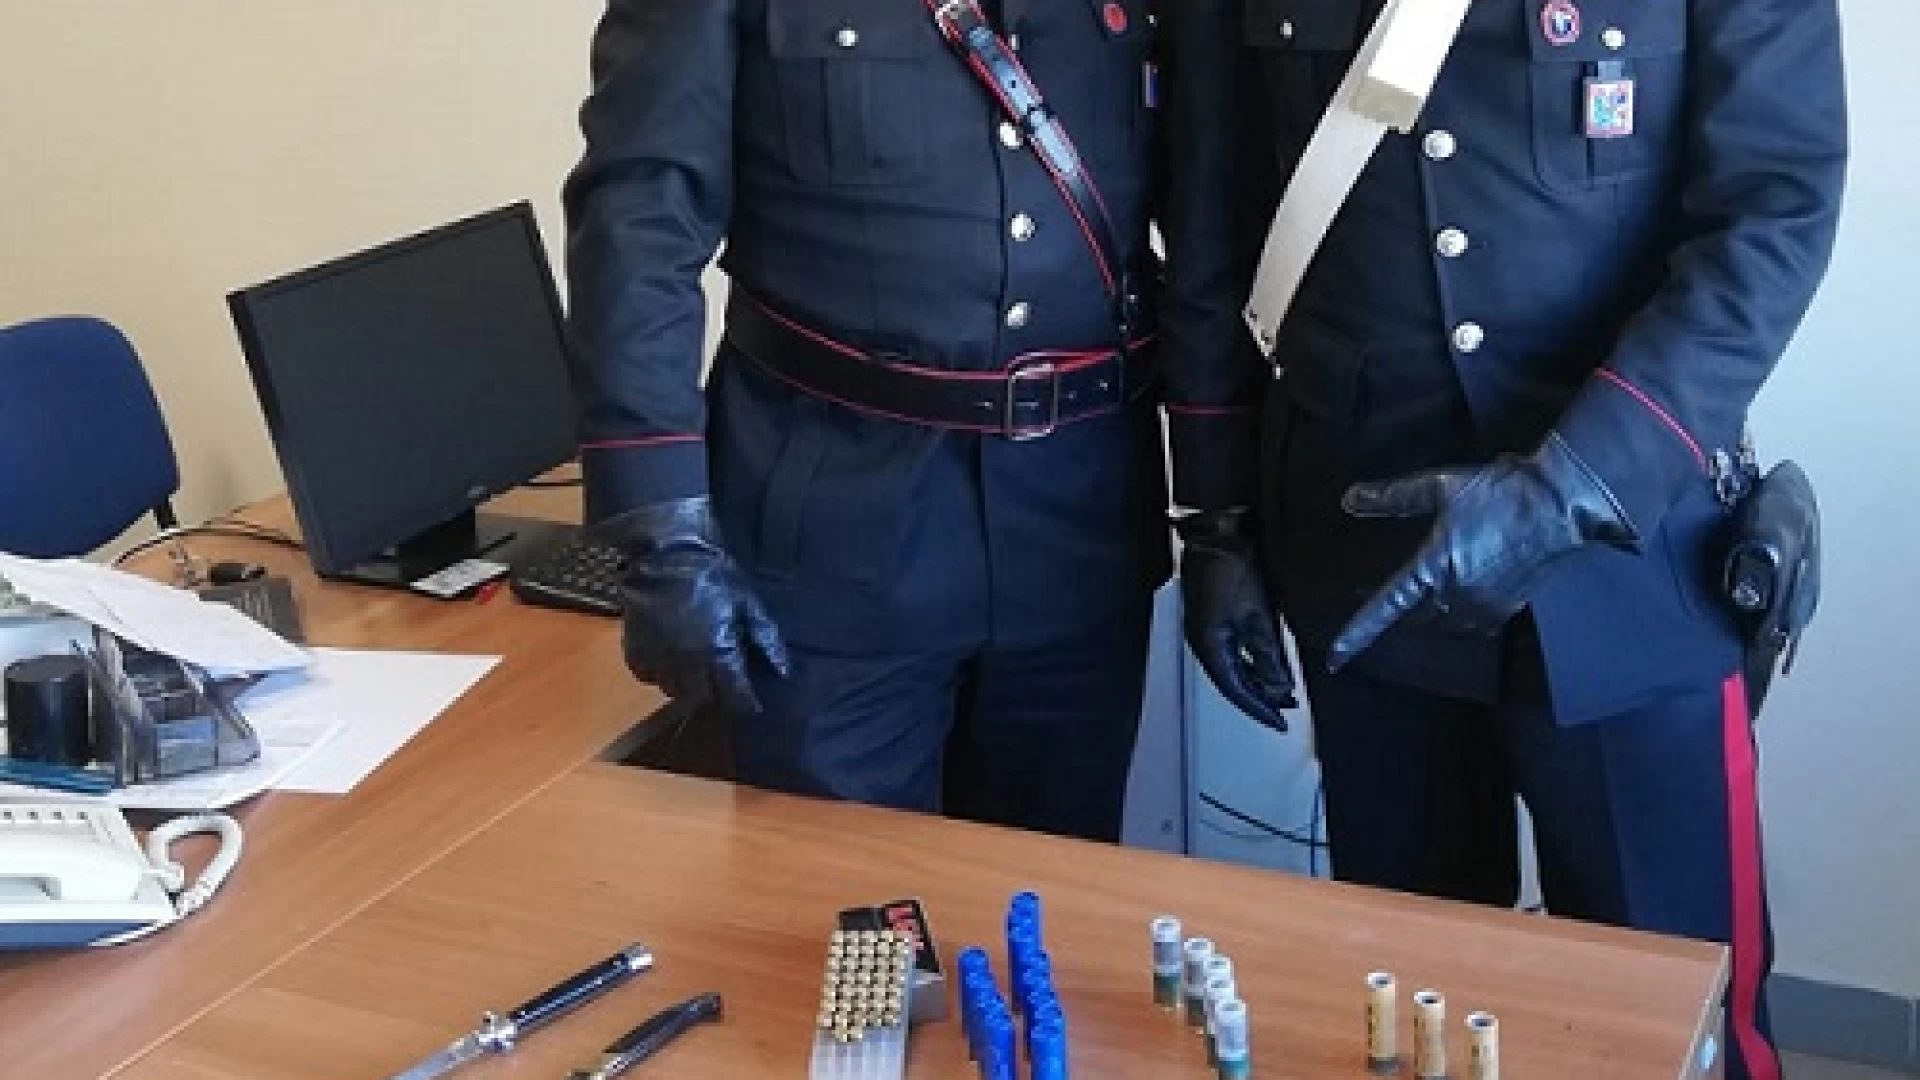 Venafro: detenzione illegale di armi e munizioni, denunciato 65enne del posto dai Carabinieri